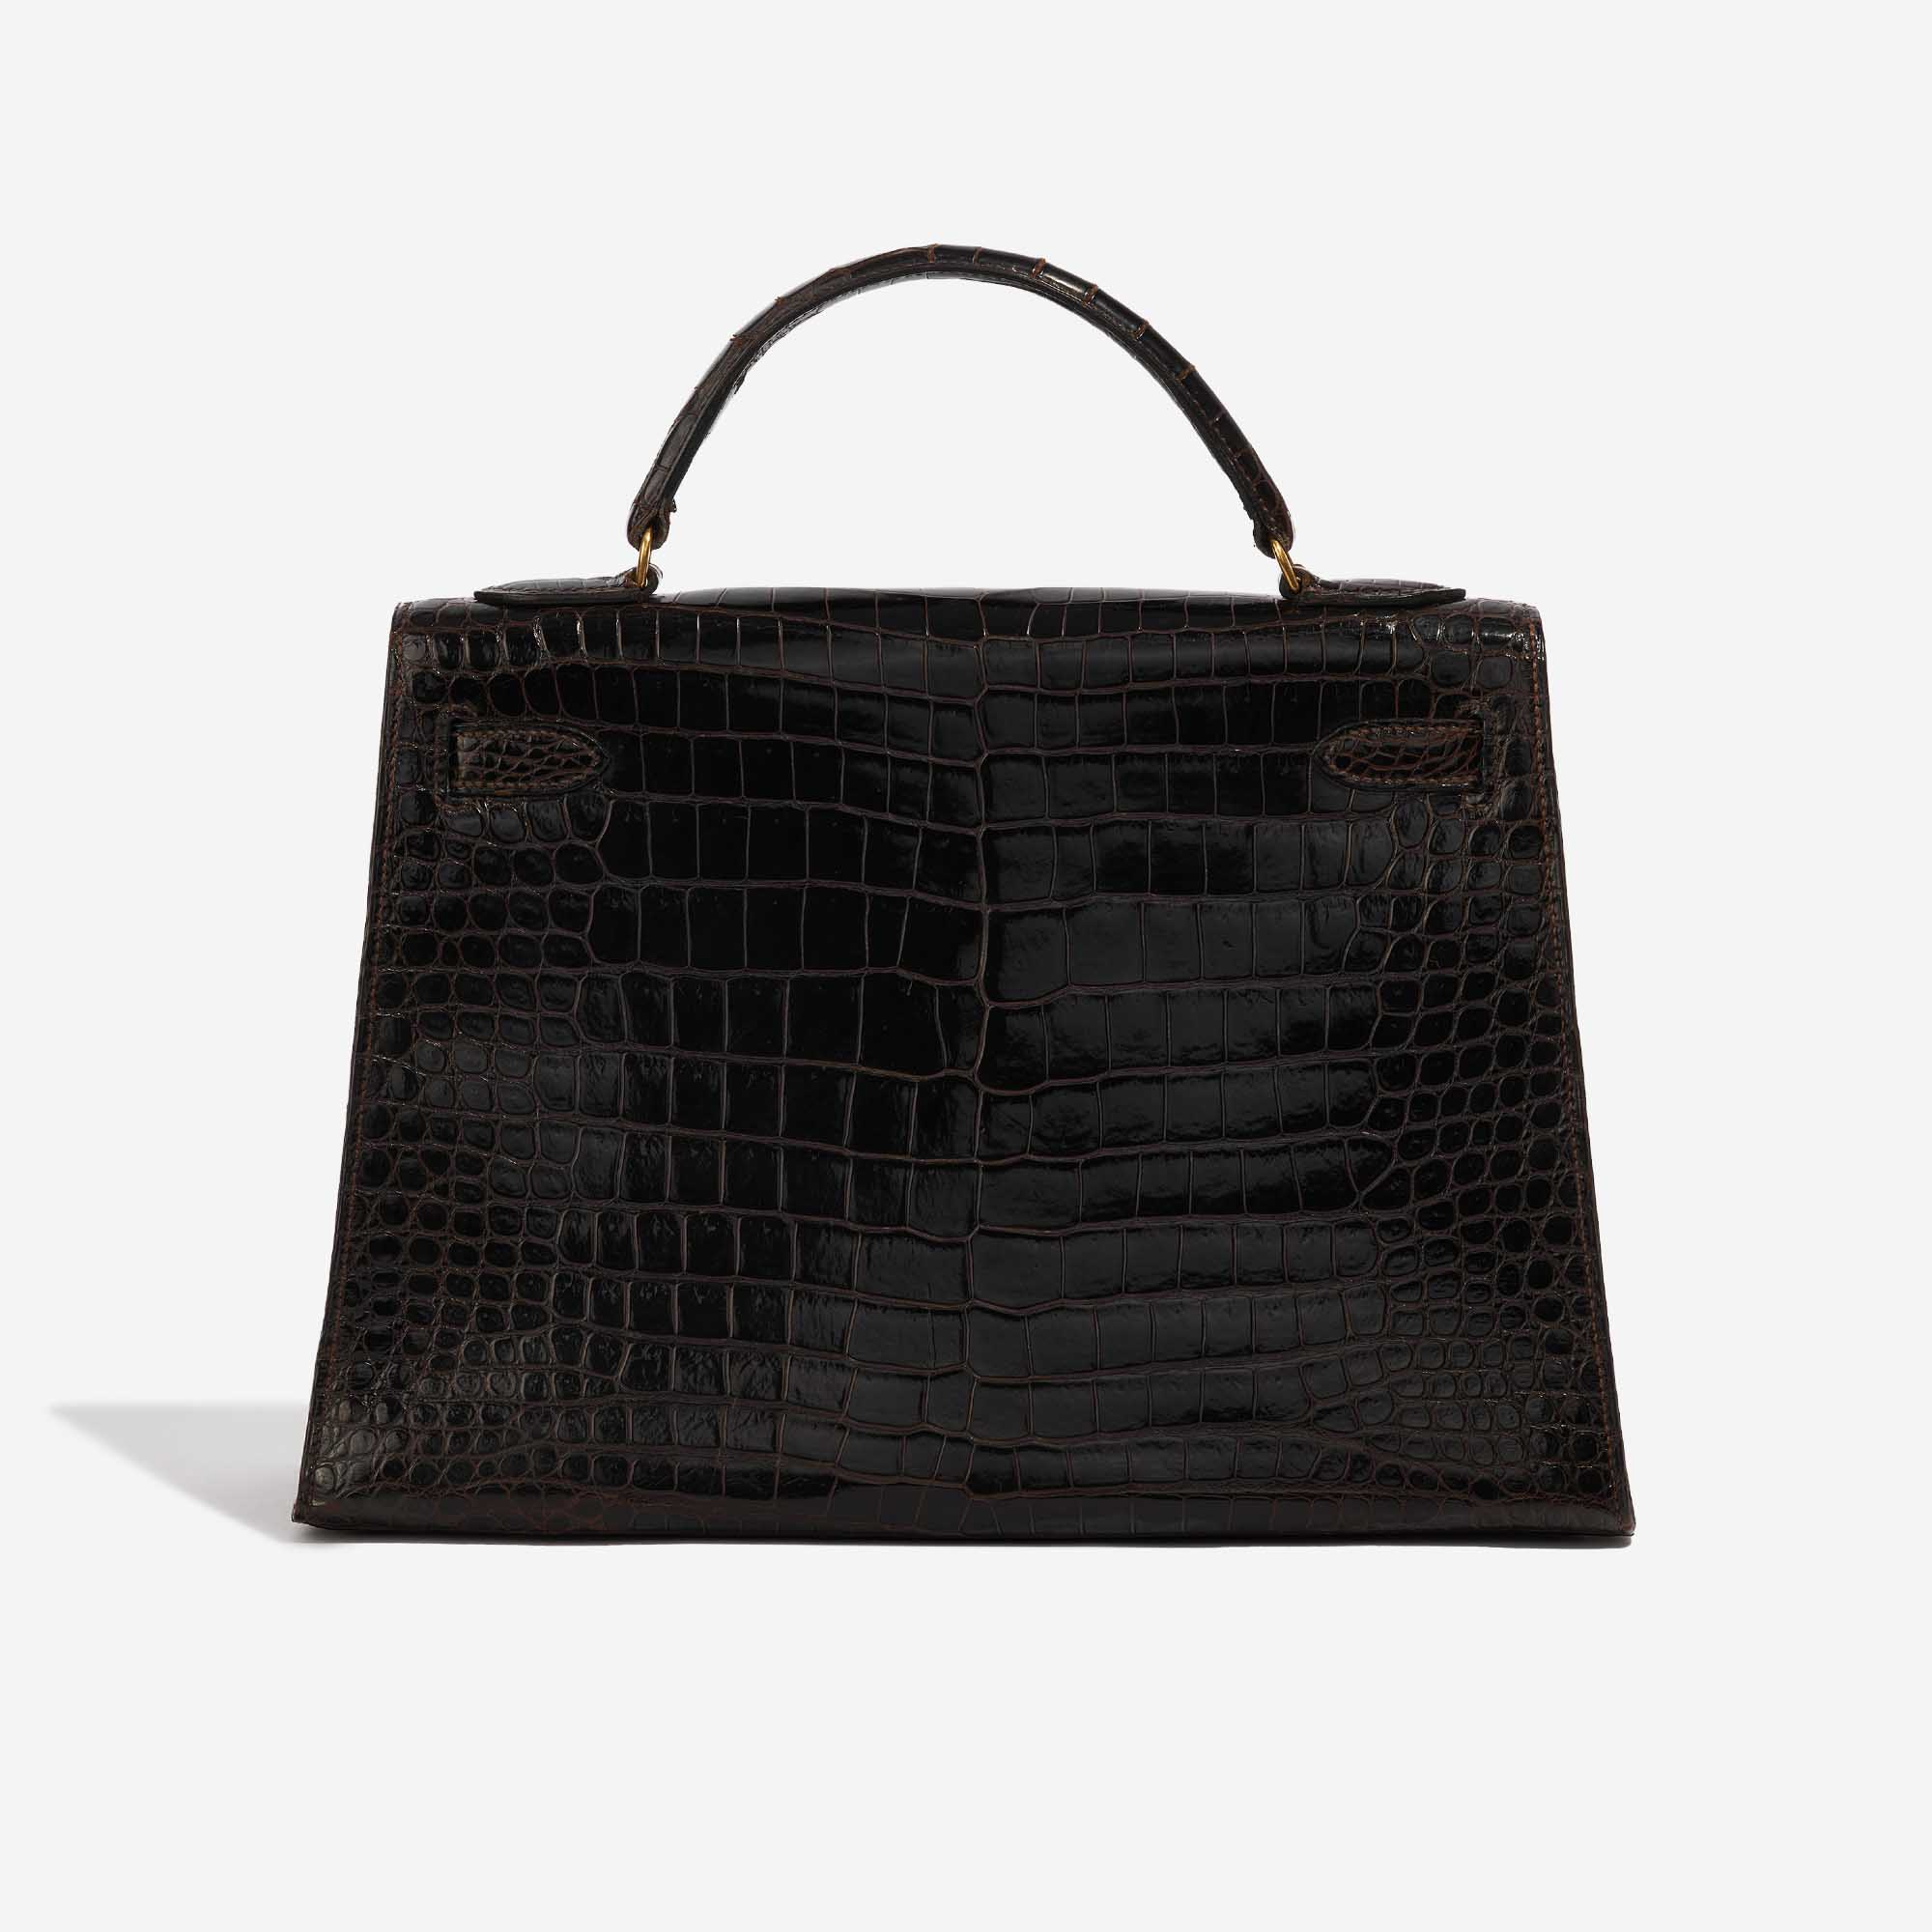 Pre-owned Hermès Tasche Kelly 32 Porosus Crocodile Dark Brown Brown Back | Verkaufen Sie Ihre Designer-Tasche auf Saclab.com